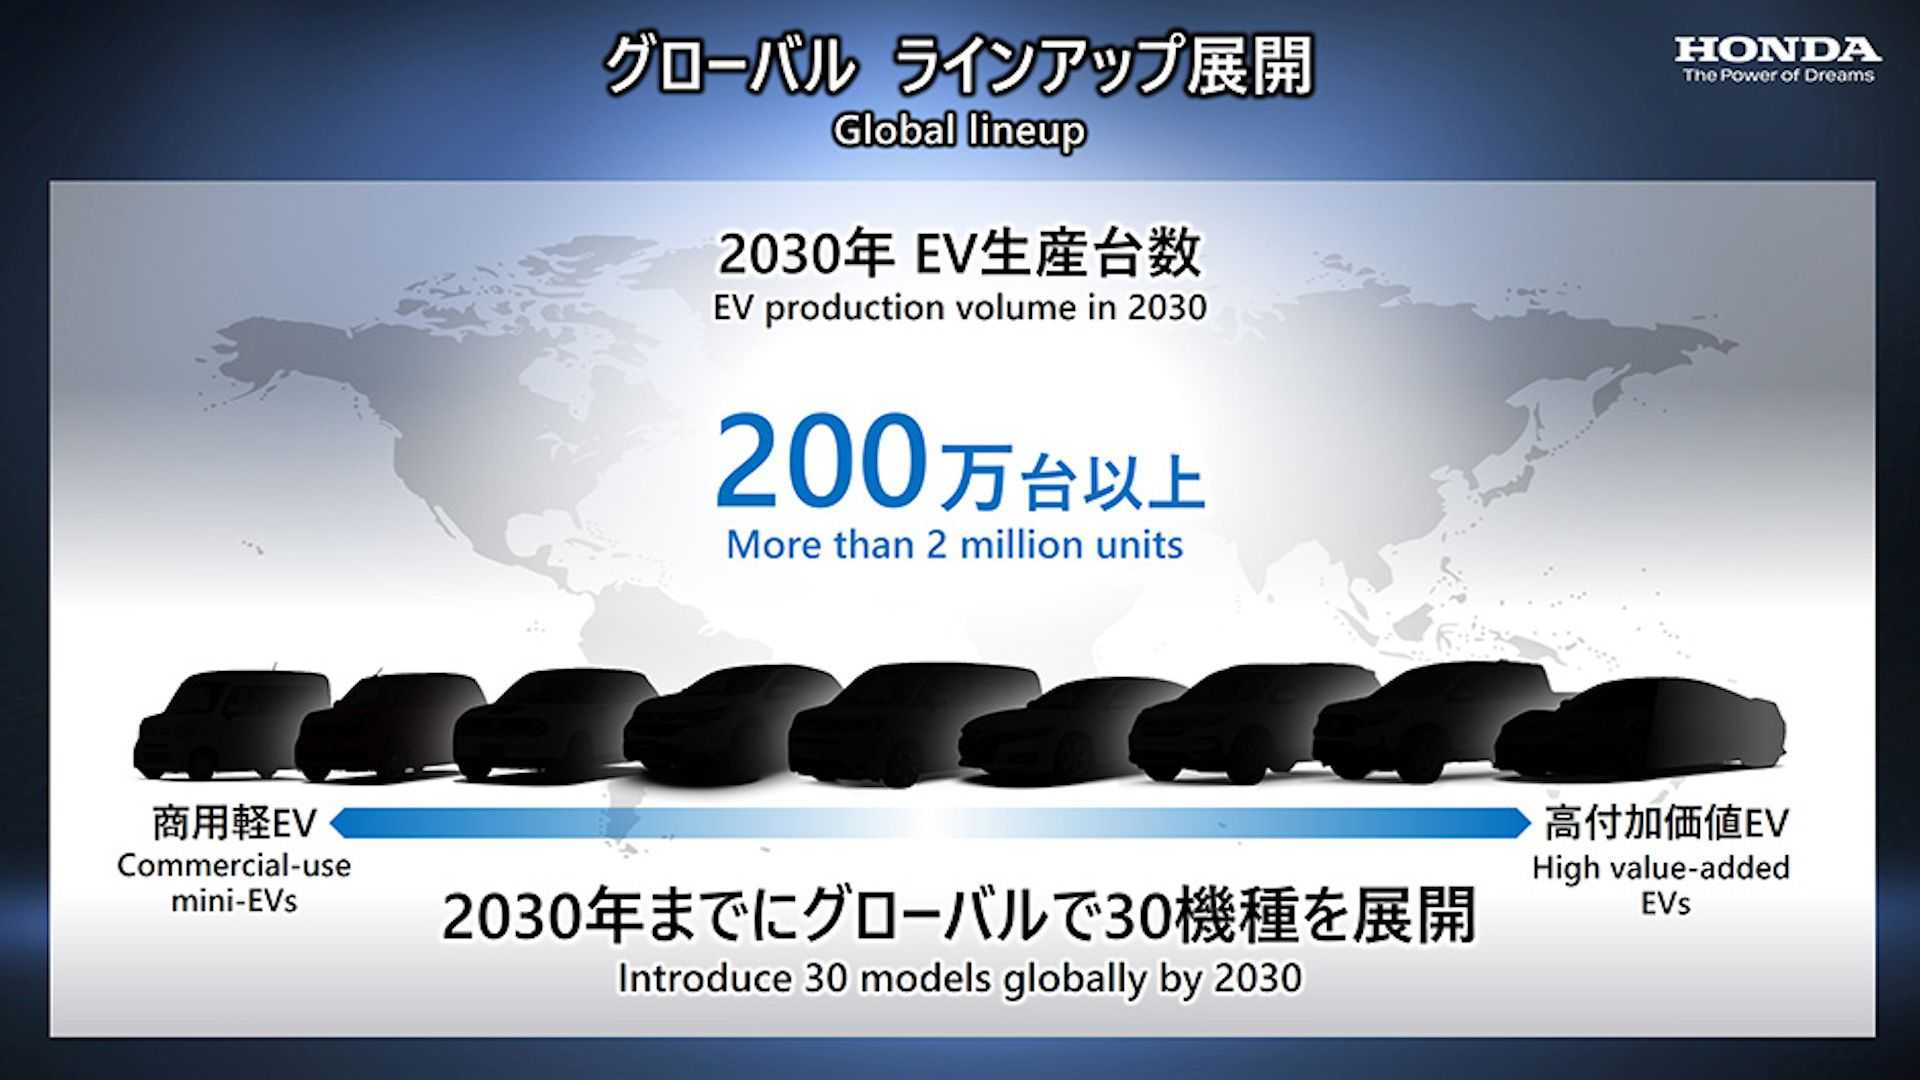 Honda планирует возродить свою легендарную модель